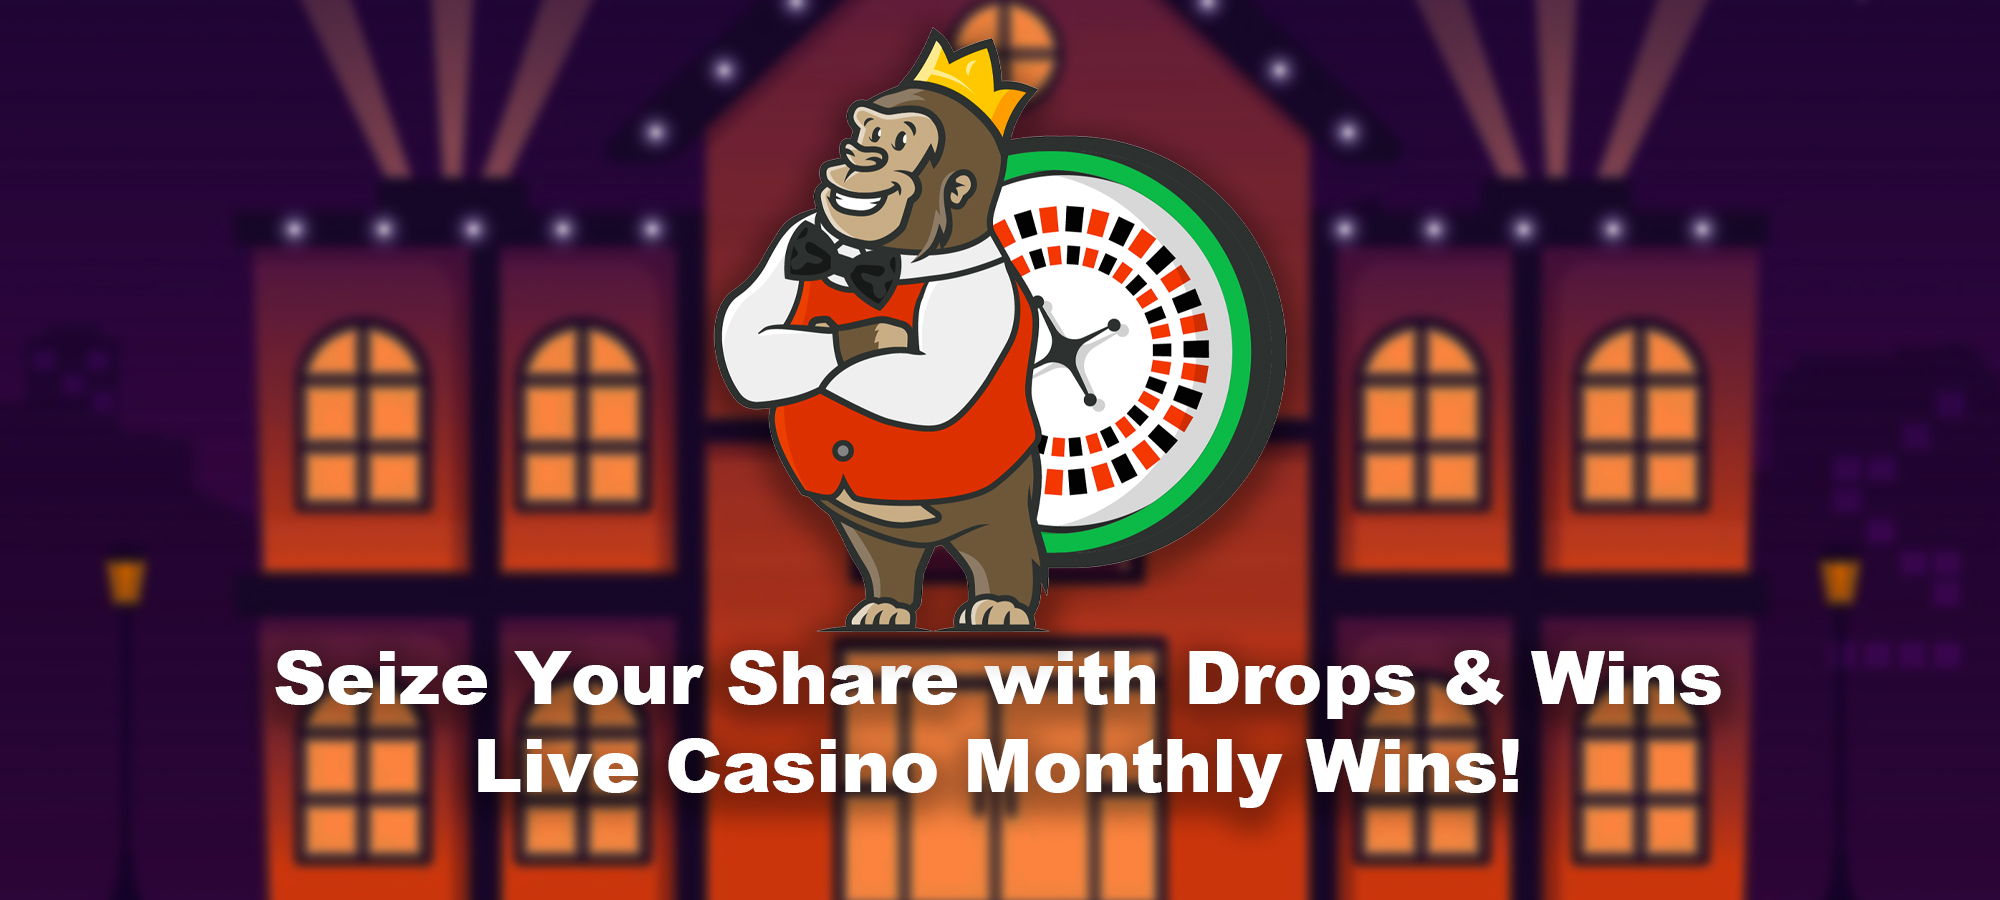 Sichern Sie Sich Ihr Vermögen bei den Drops & Wins Live Casino Monatsgewinnen!